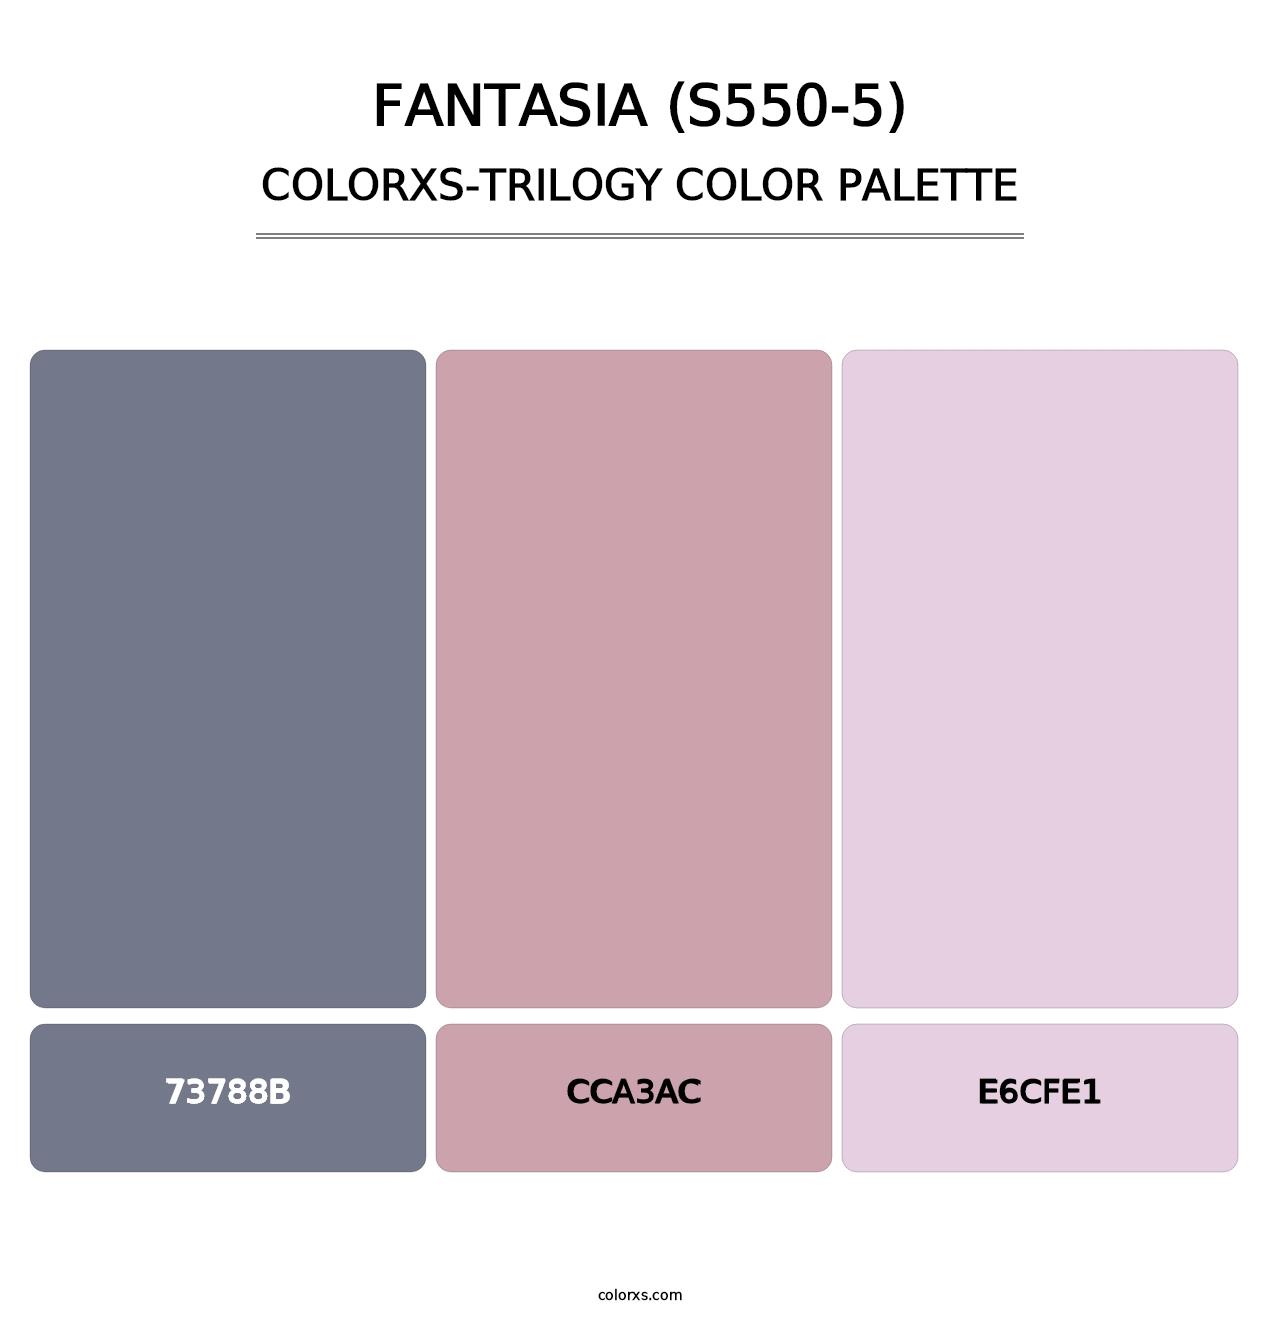 Fantasia (S550-5) - Colorxs Trilogy Palette